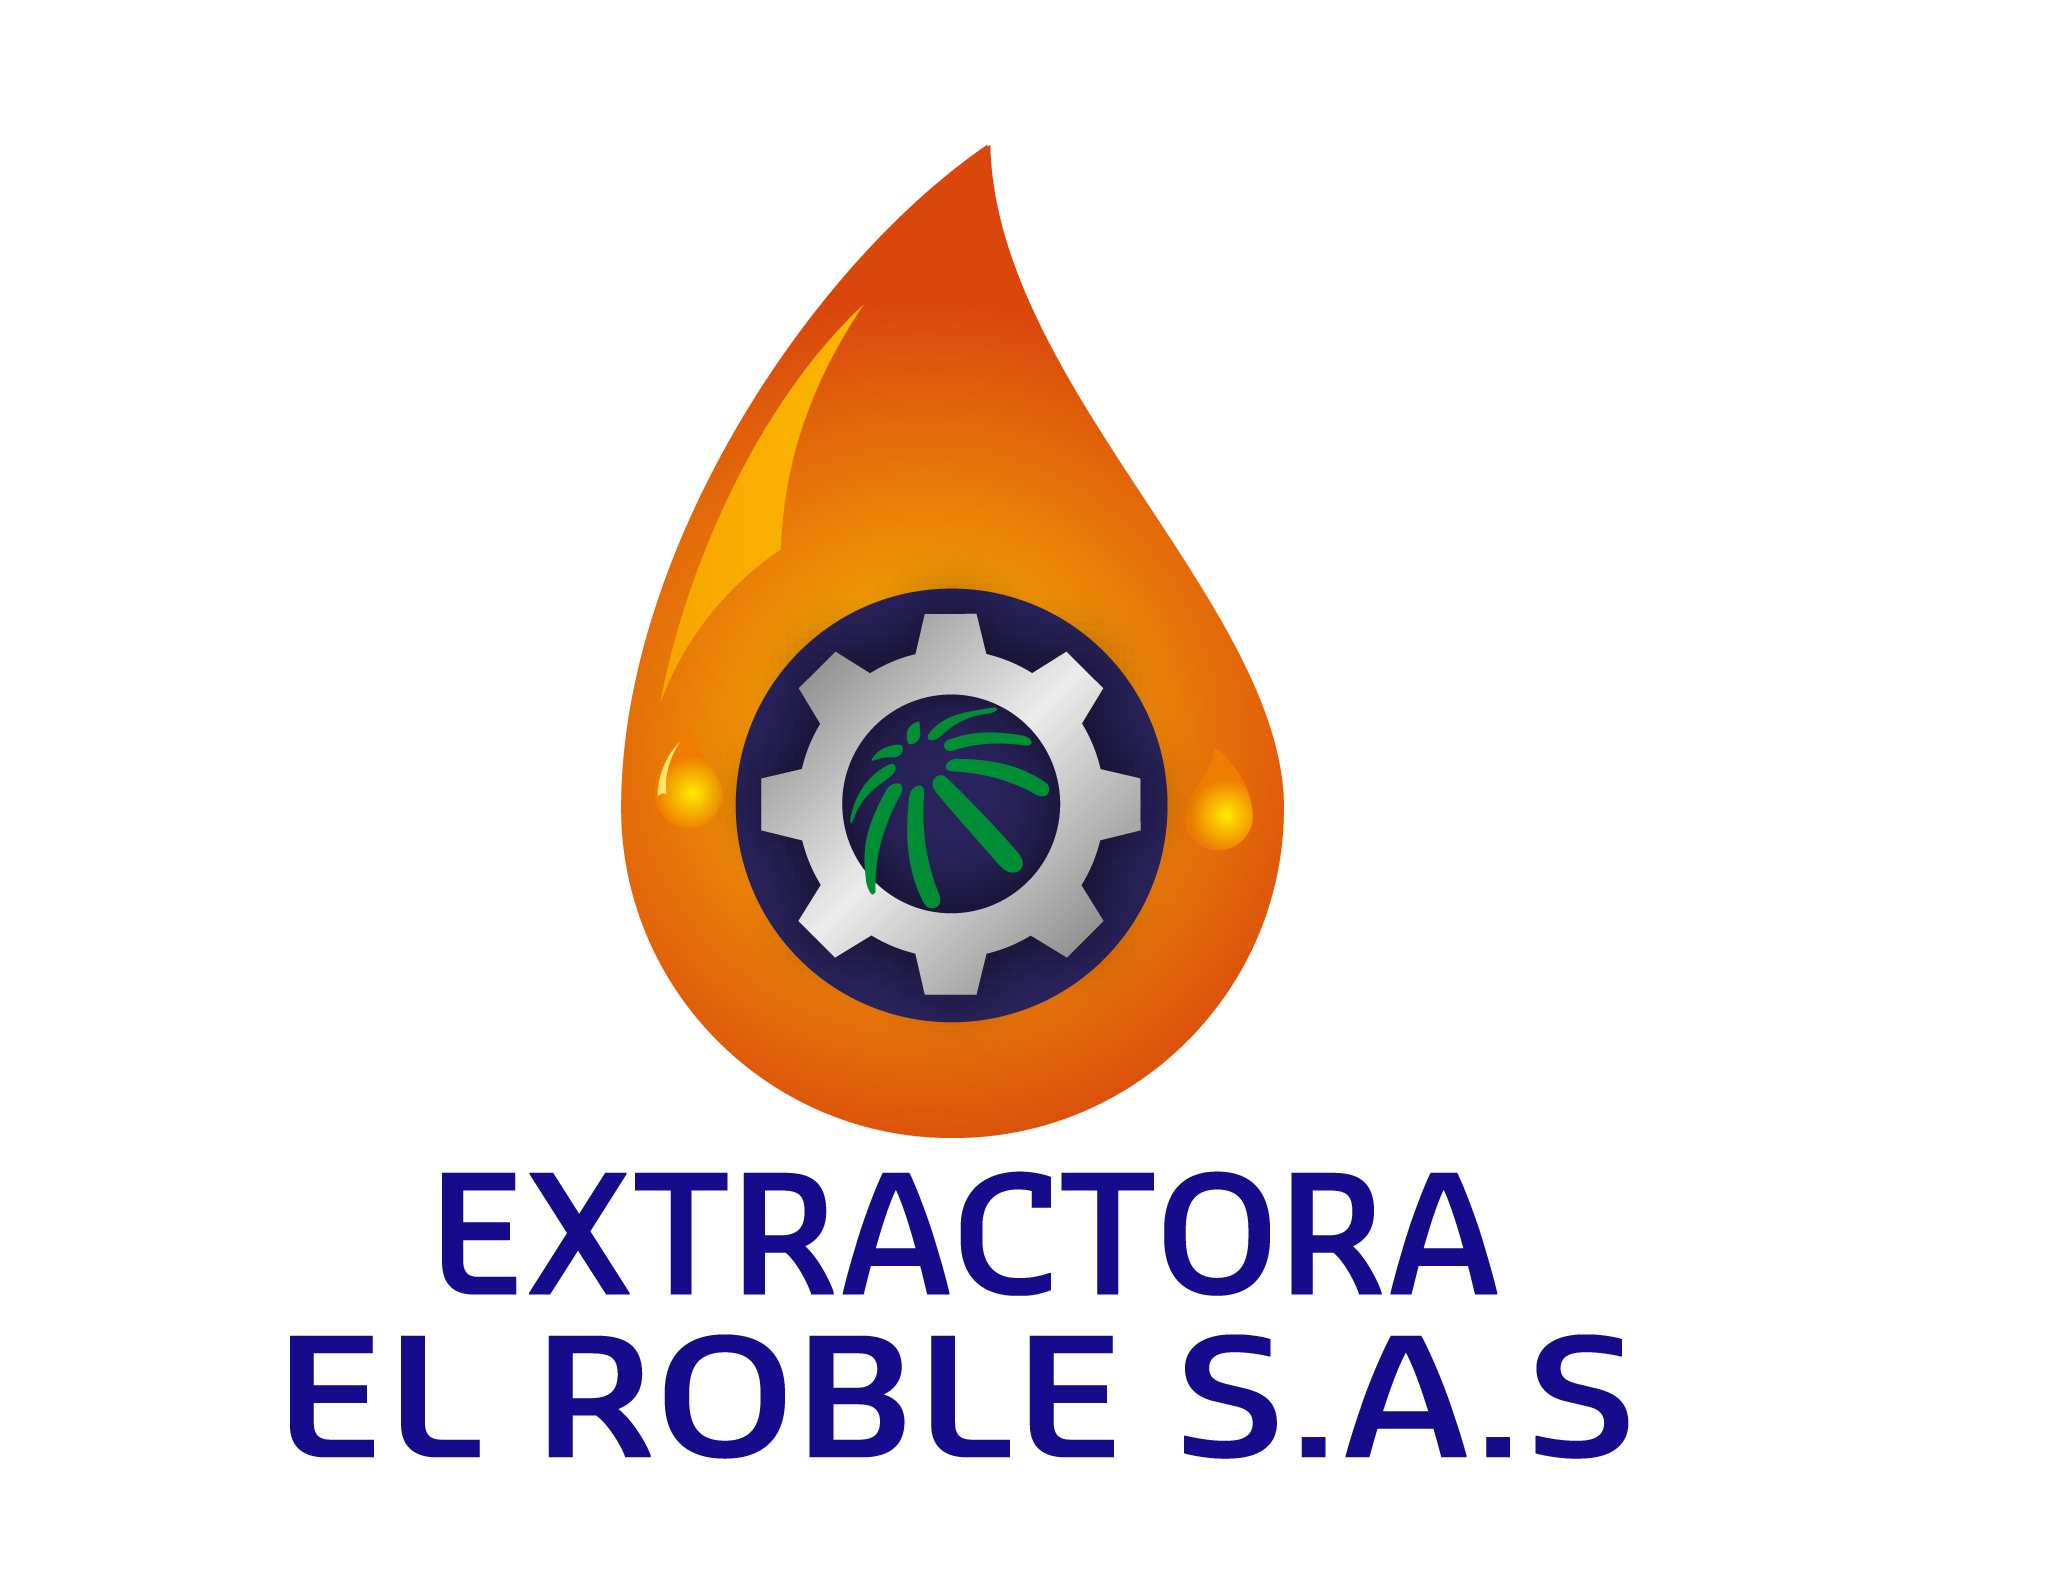 Inicio - Extractora El Roble S.A.S - Santa Marta, Zona Bananera, Colombia